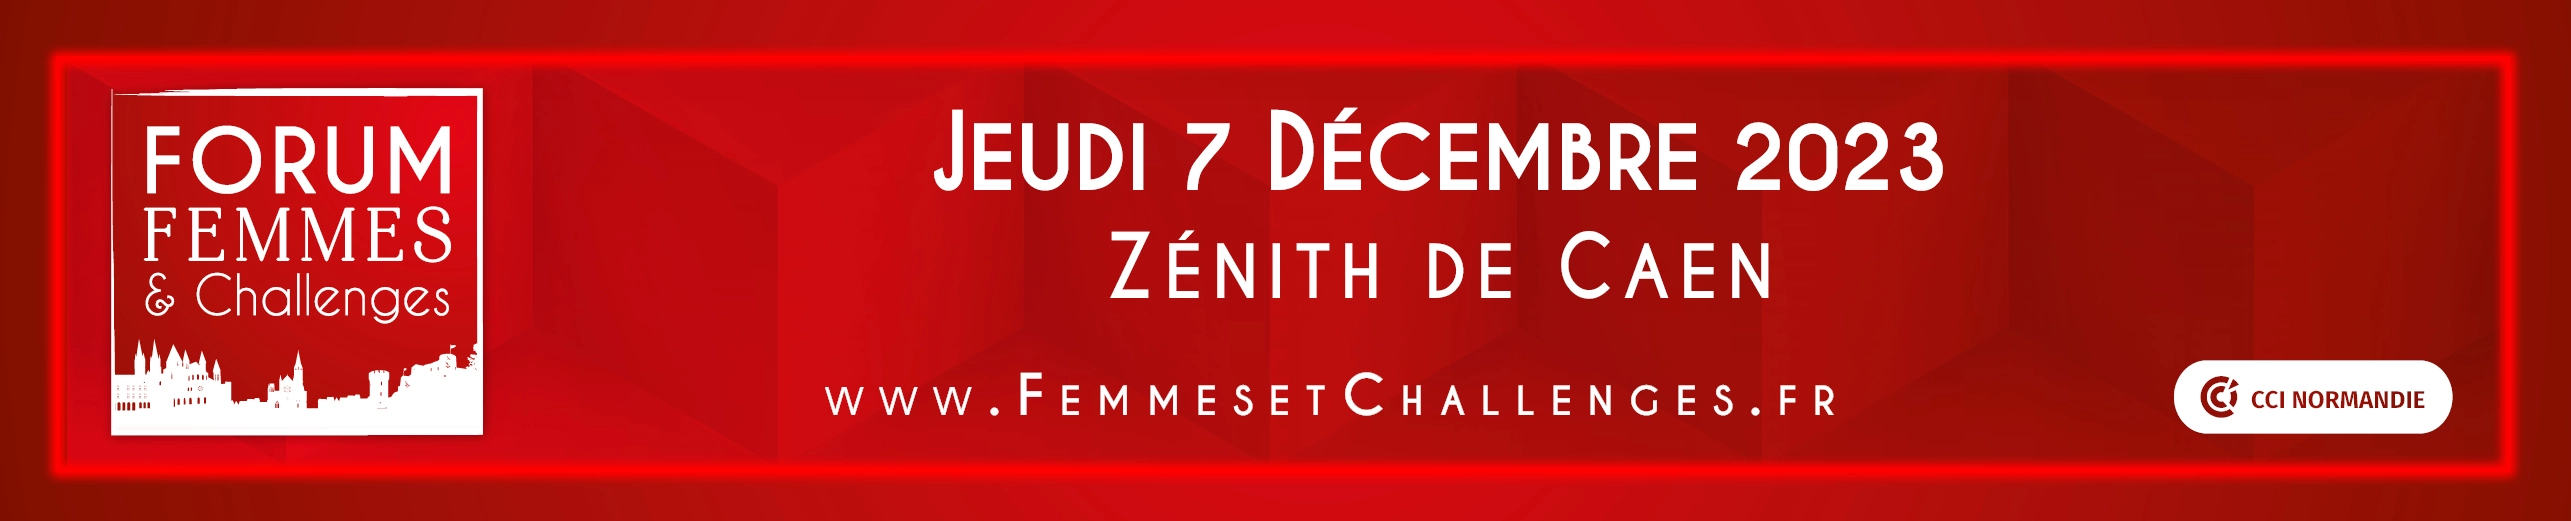 Femmes e challenge decembre 2023